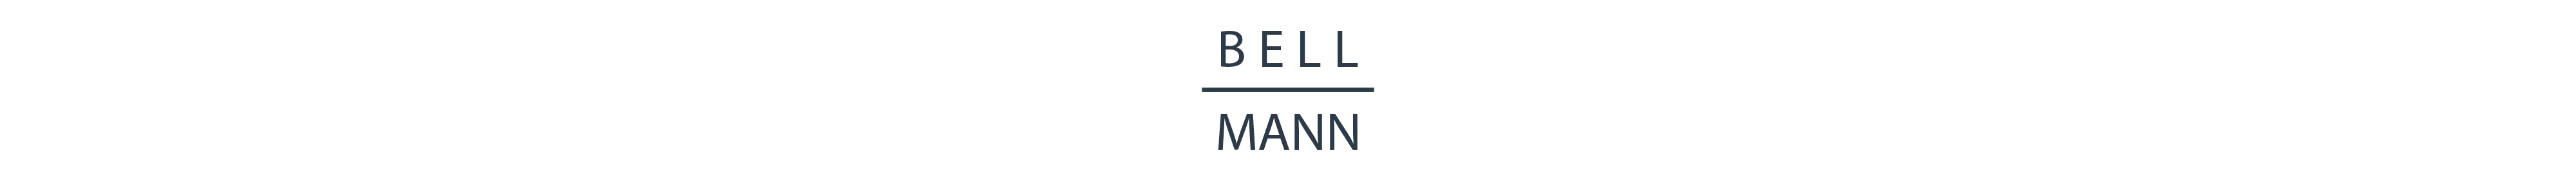 bellmann.me